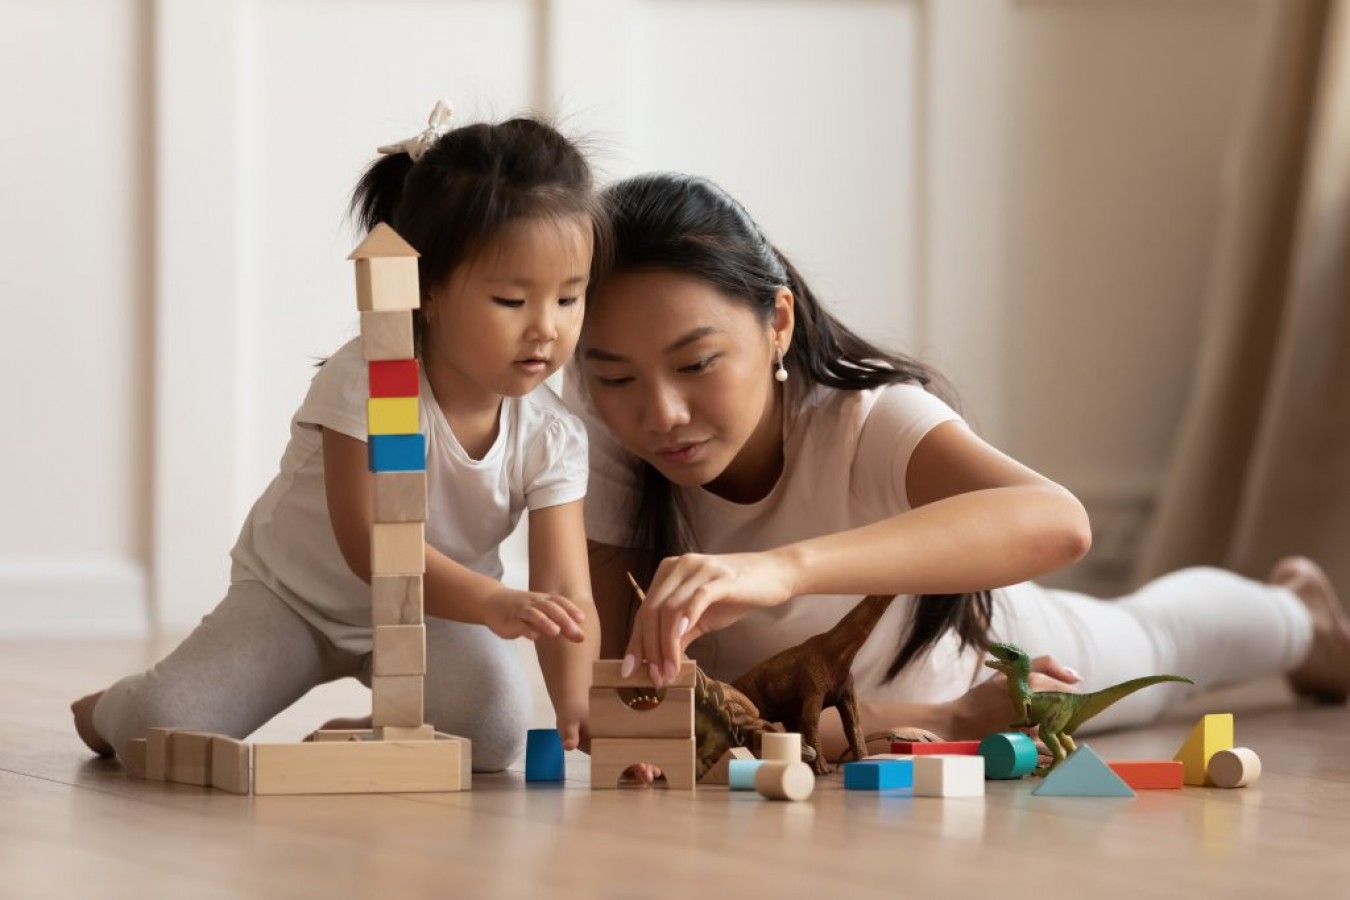 What Parents Should Know About Children's Cognitive Development